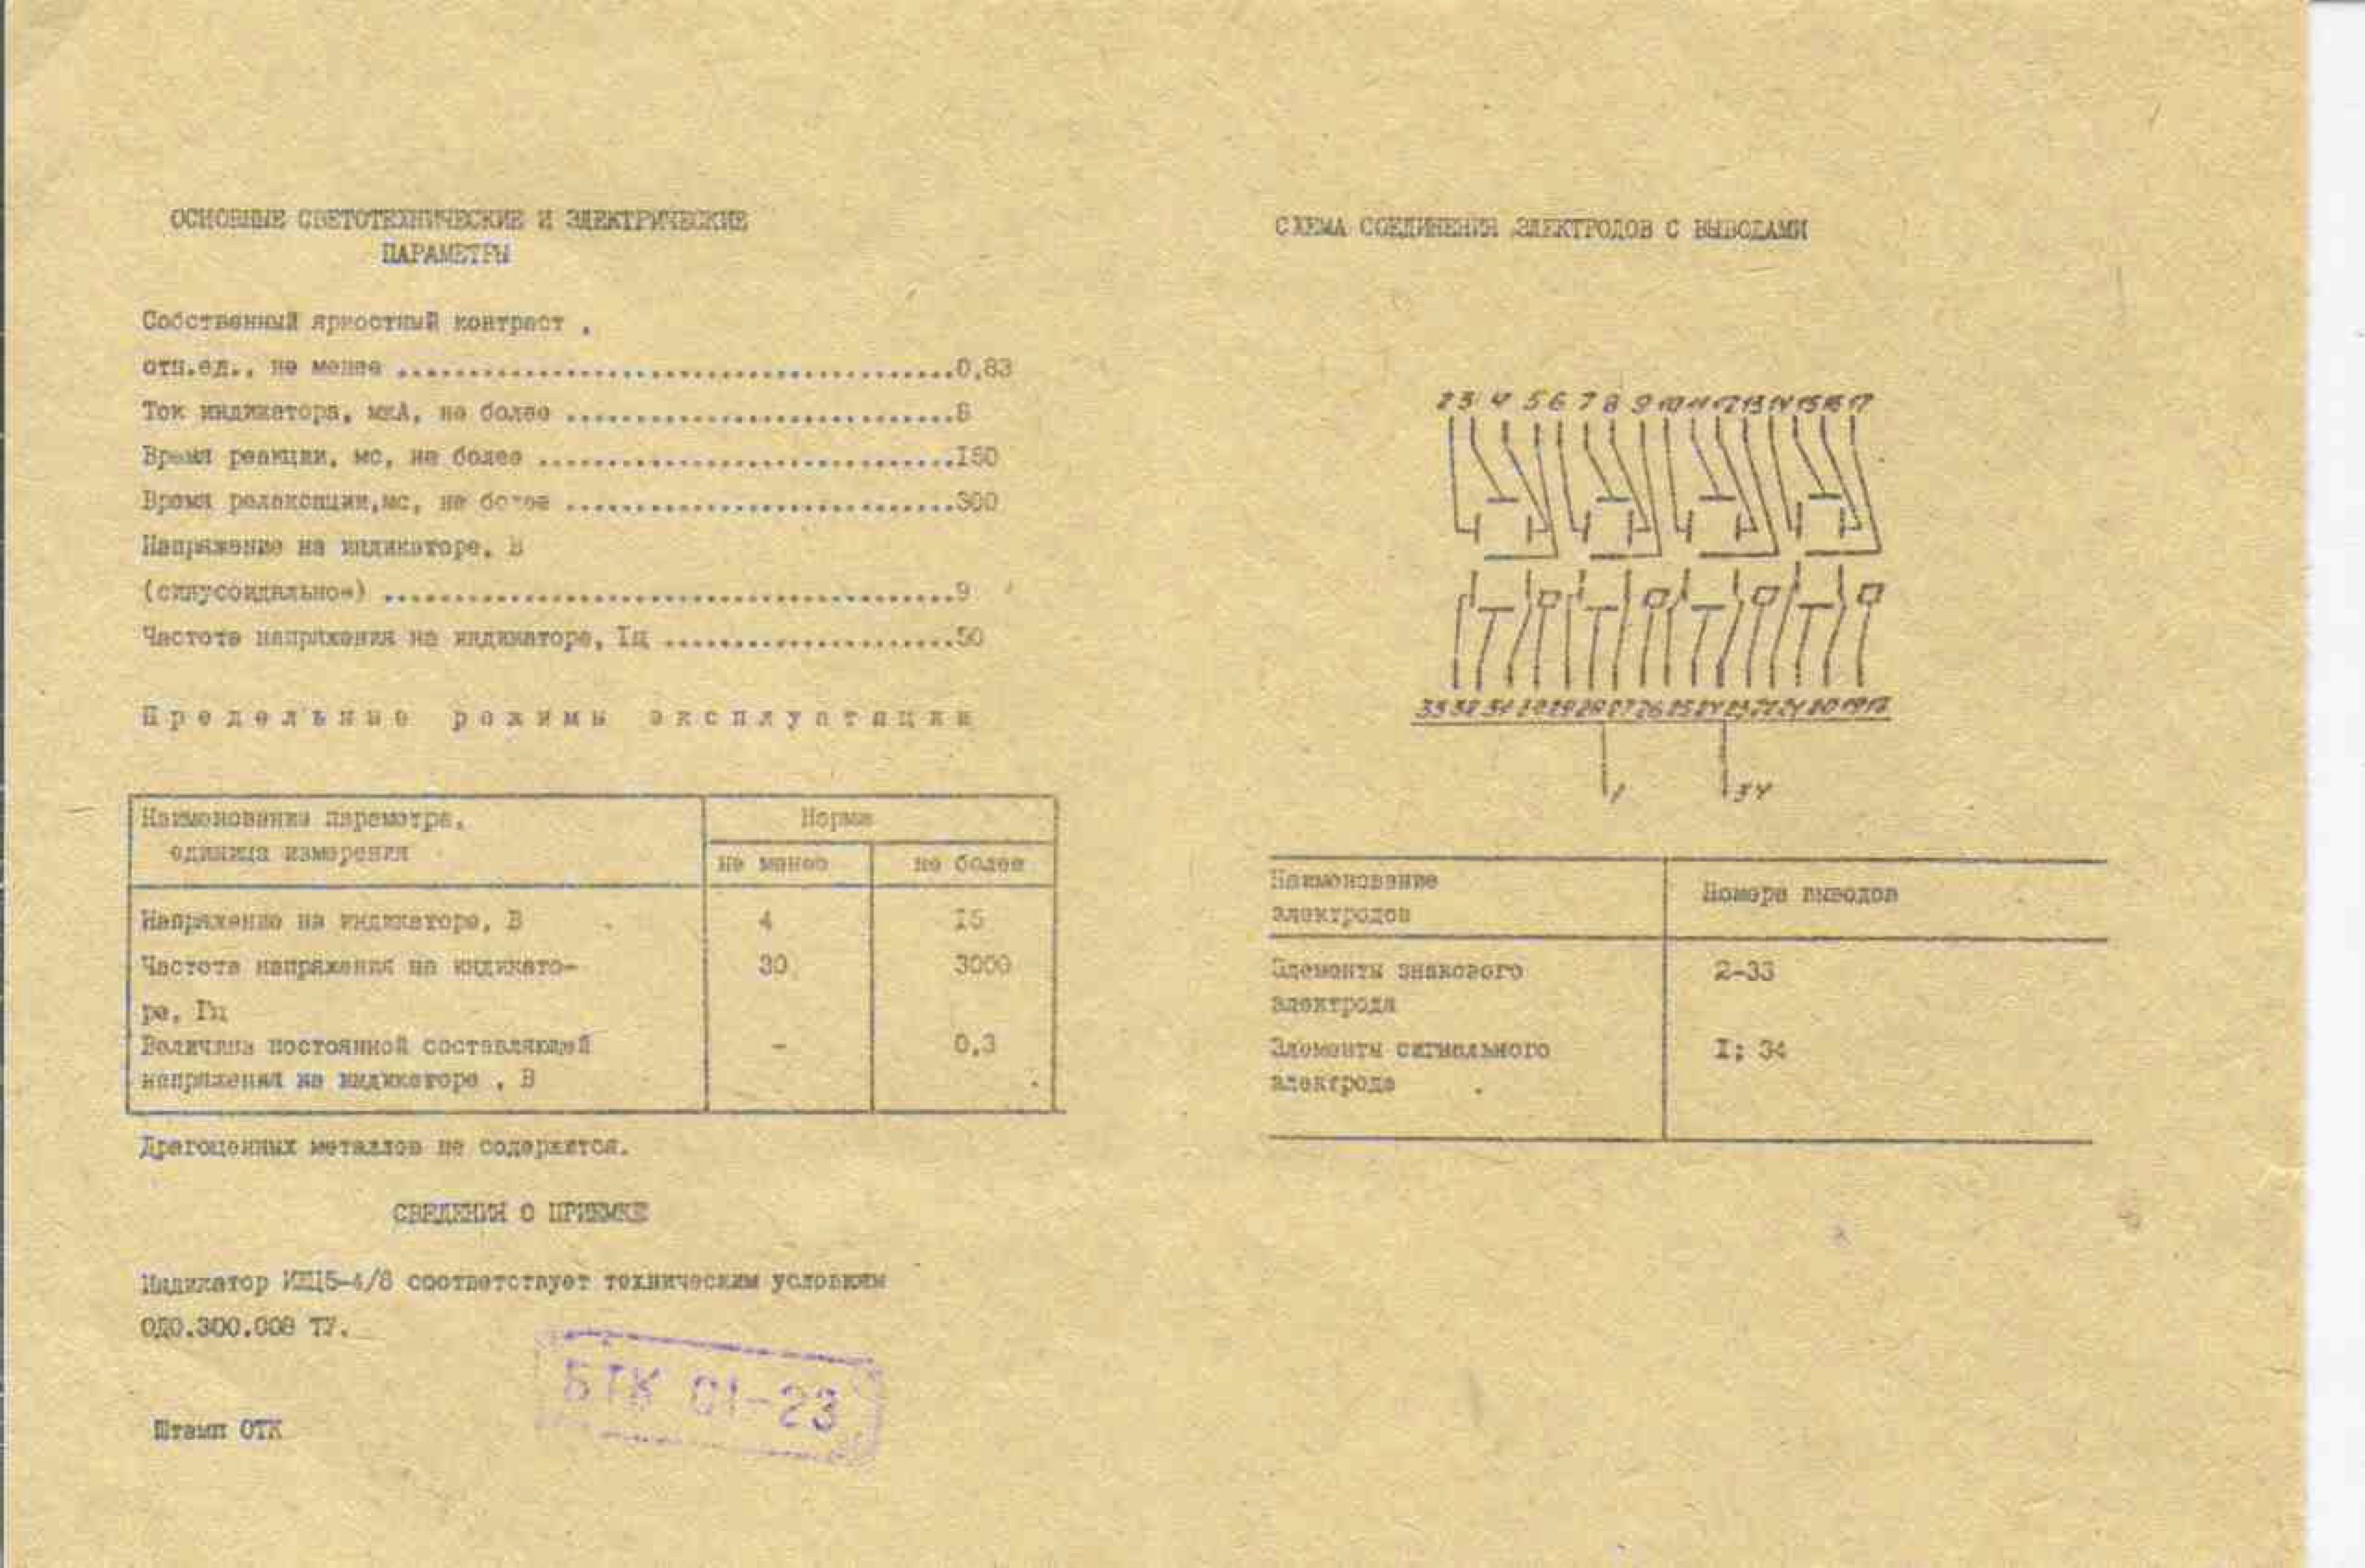 Dosimètres et Compteurs Geiger Müller soviétiques : reviews, tests et réparations I5-4-811